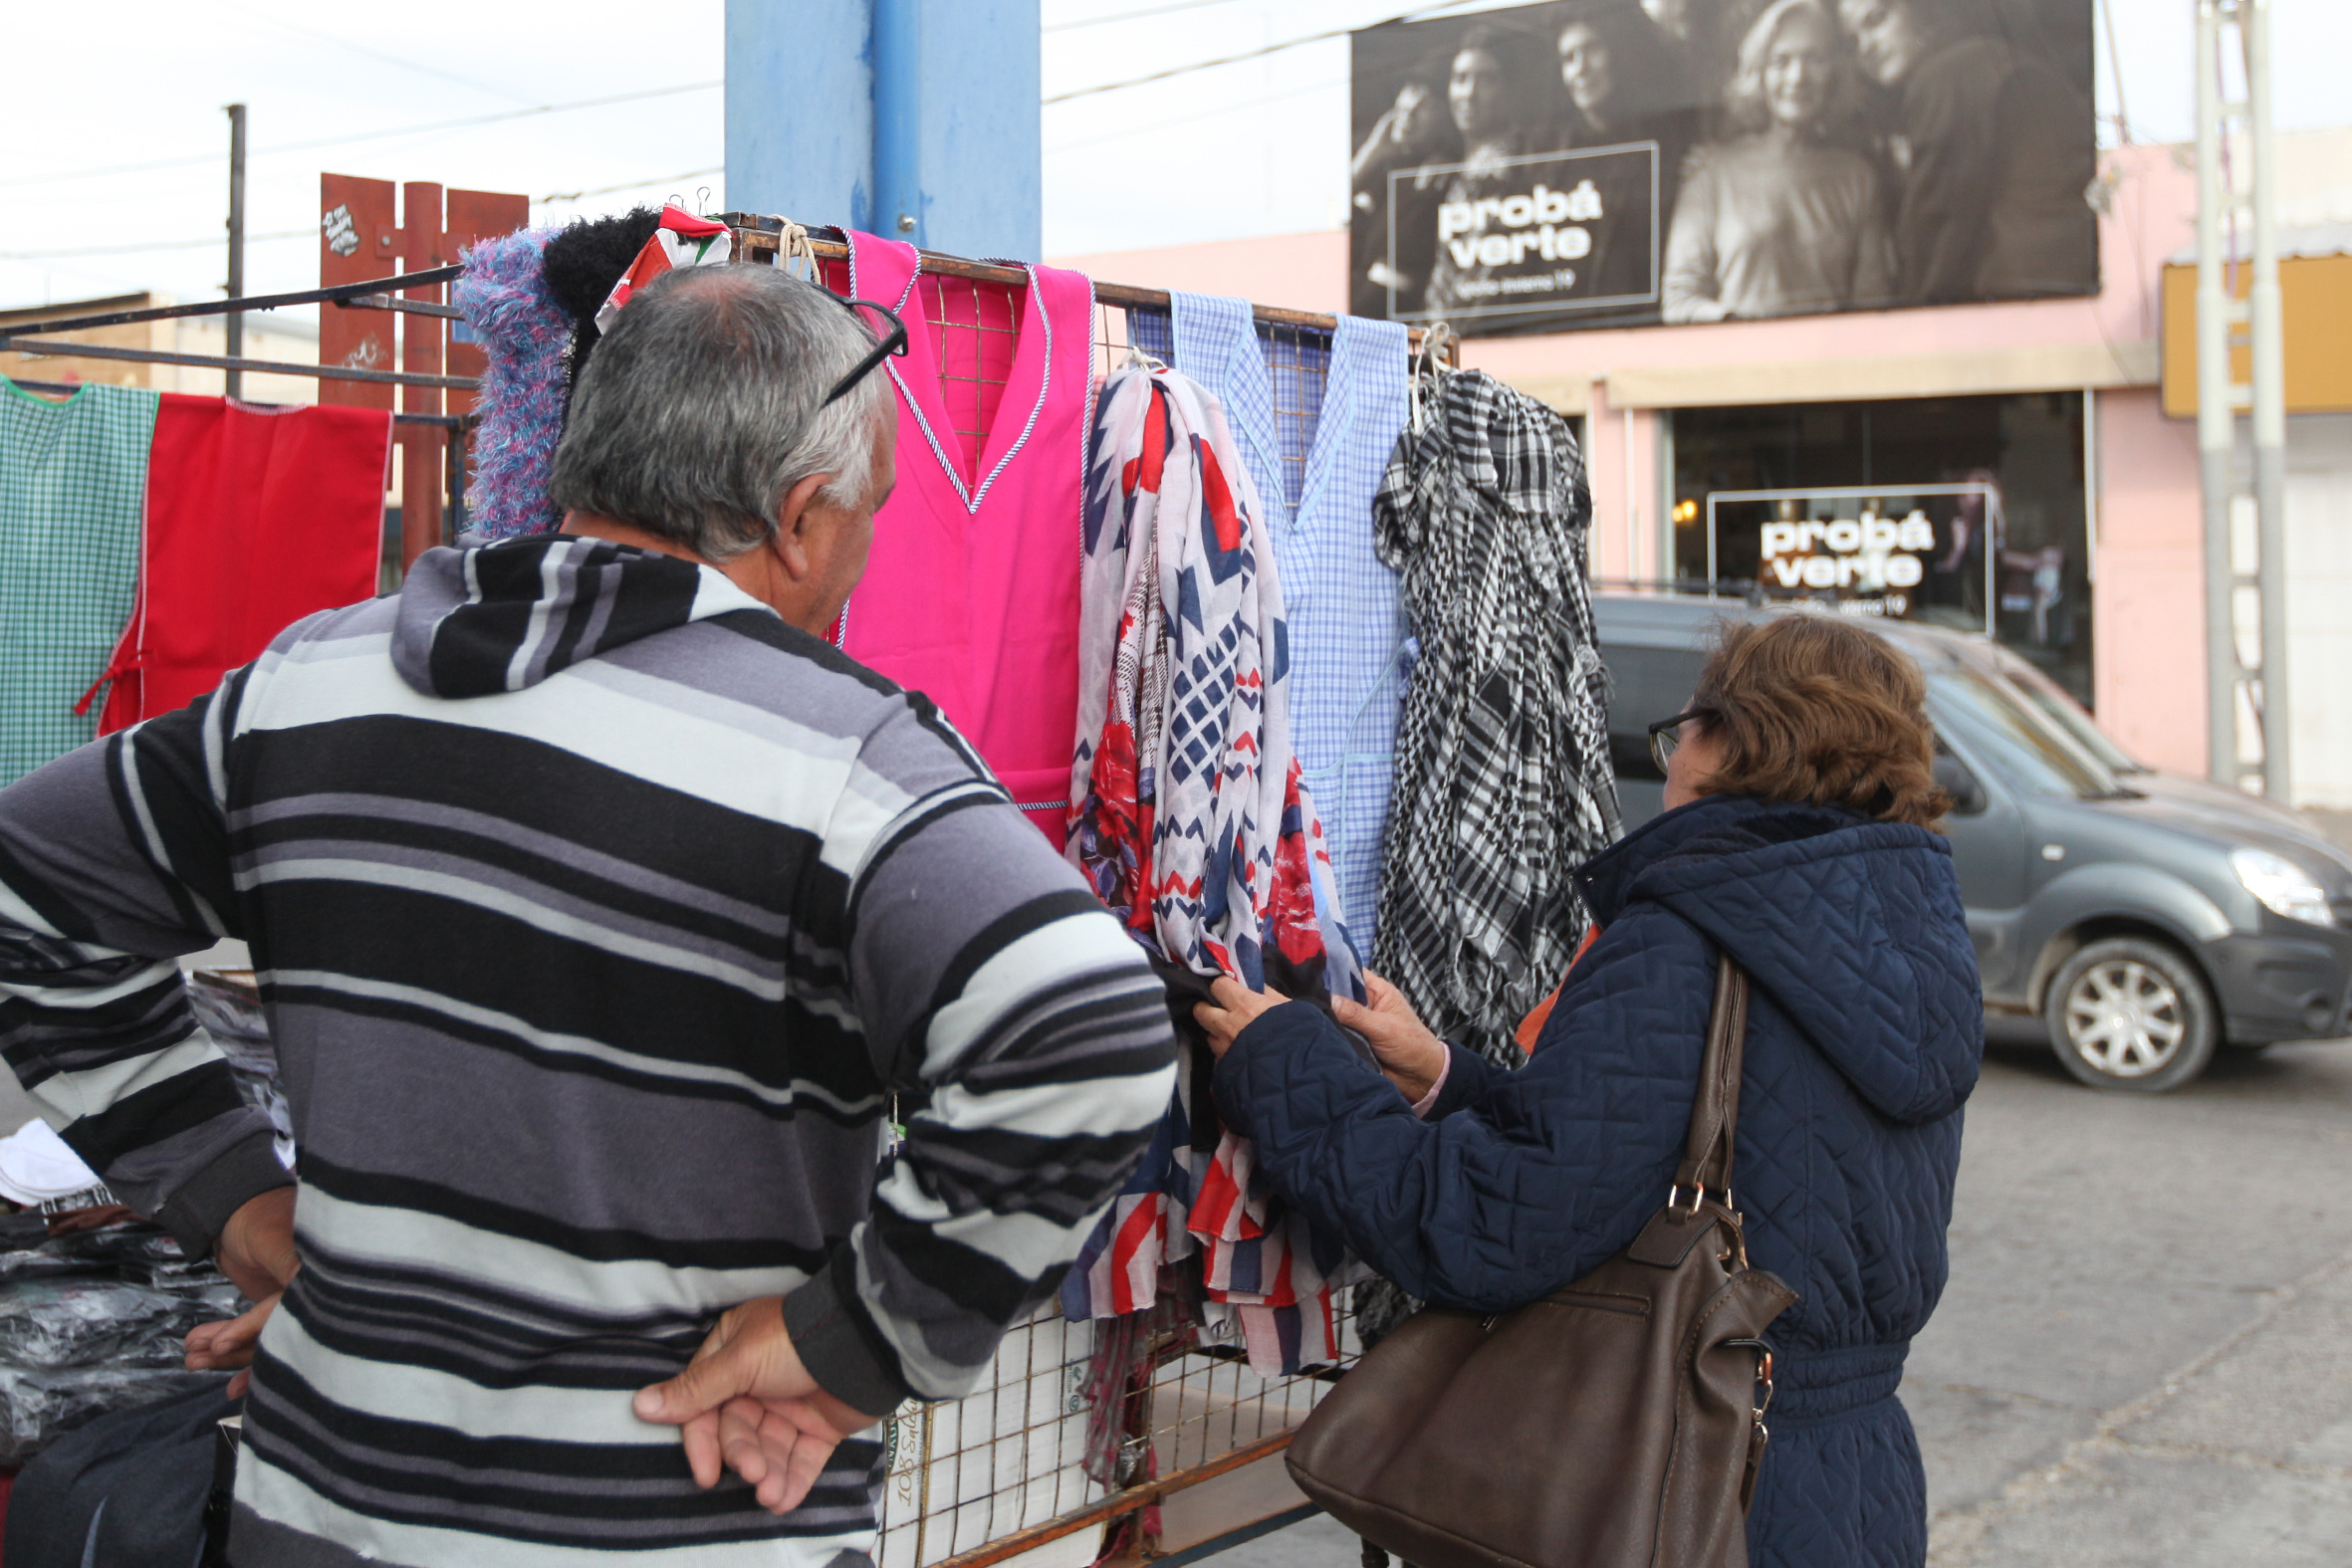 Acipan asegura que bajó la cantidad de puestos de venta callejera. (Foto: Juan Thomes)